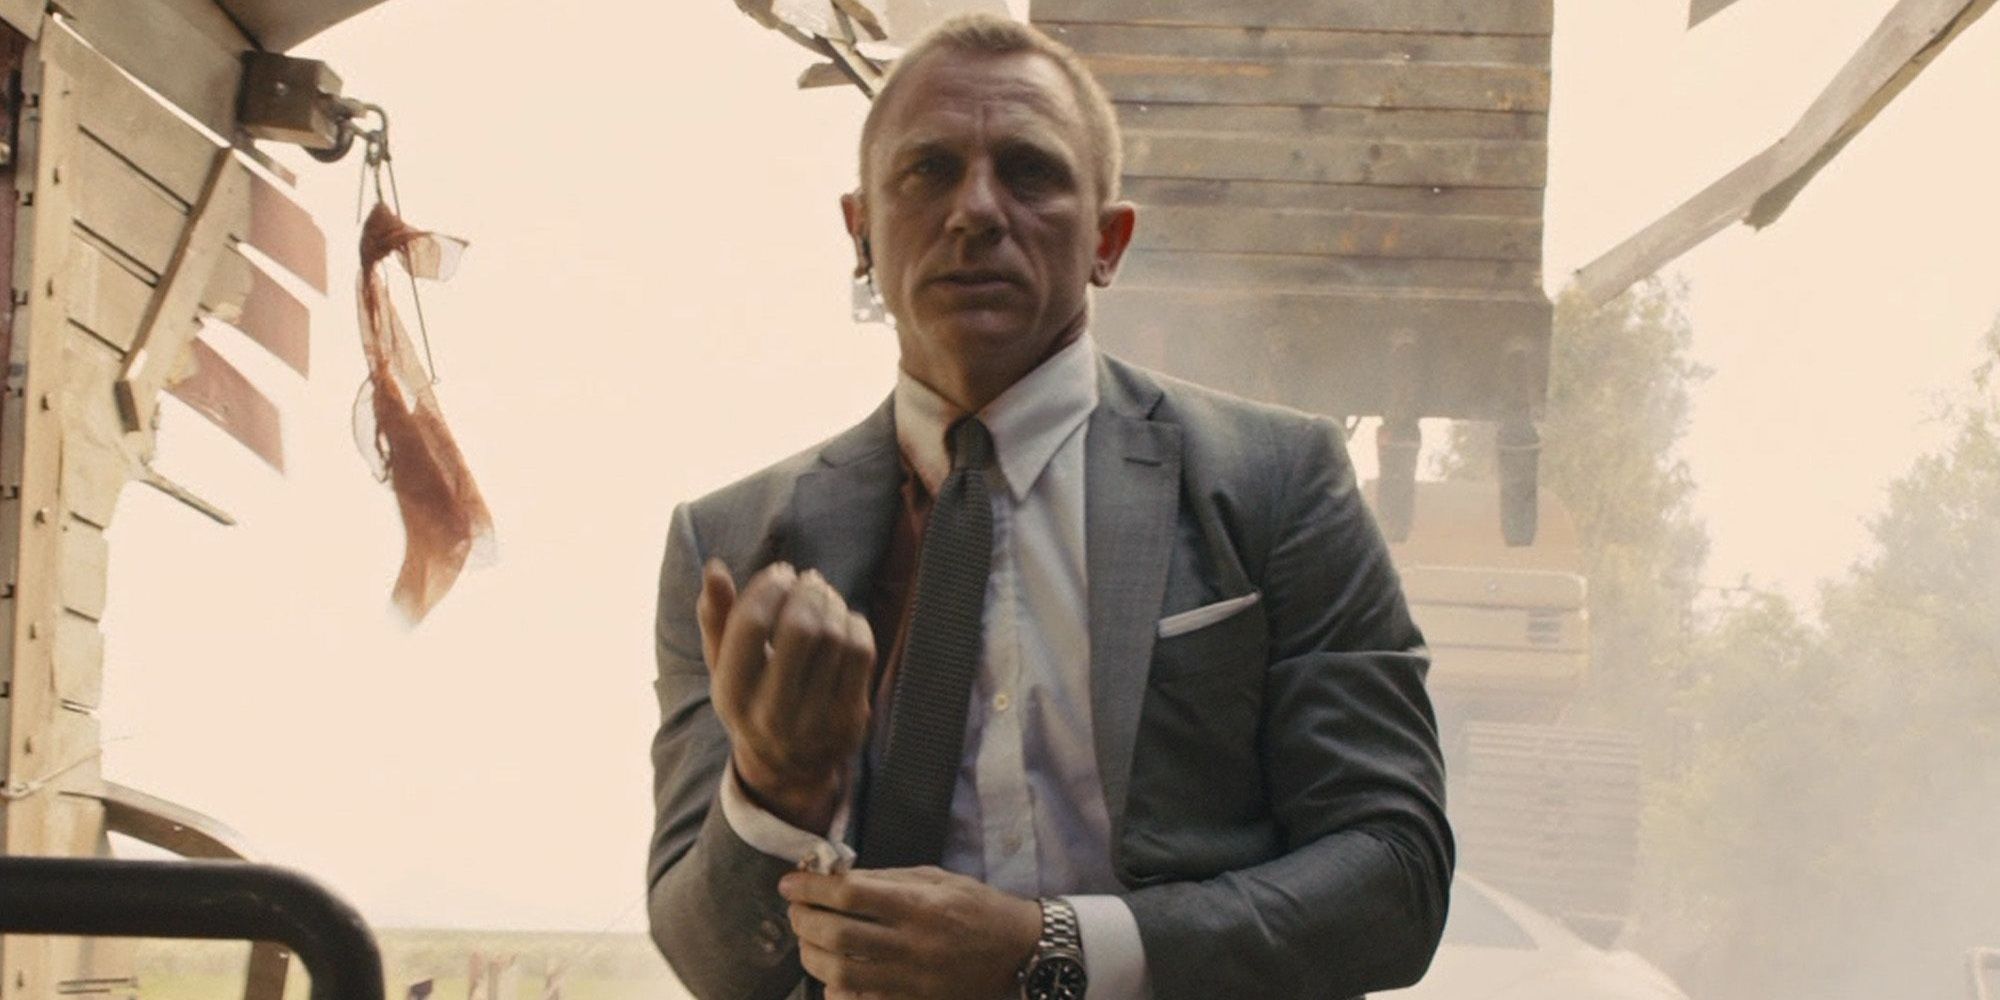 15 Best James Bond Opening Action Scenes